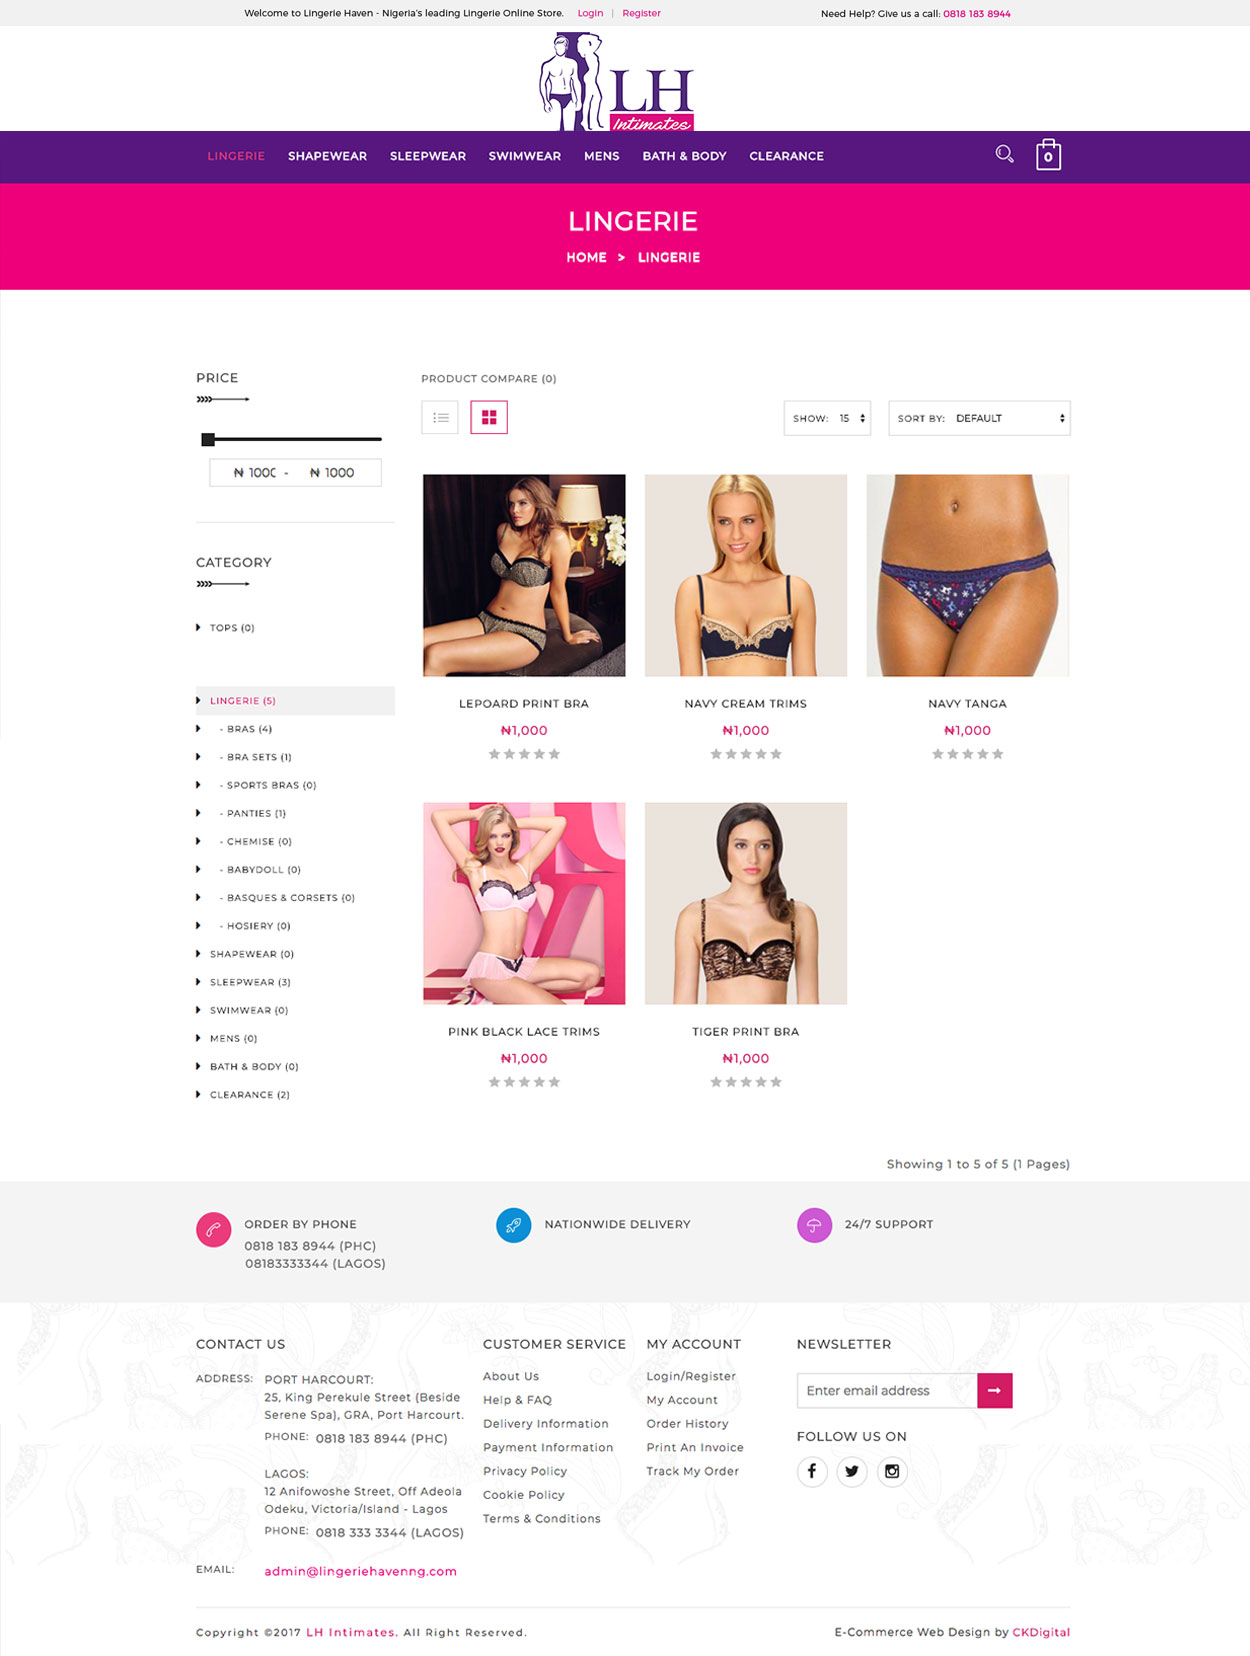 lingerie-haven-web-design-project-page-2